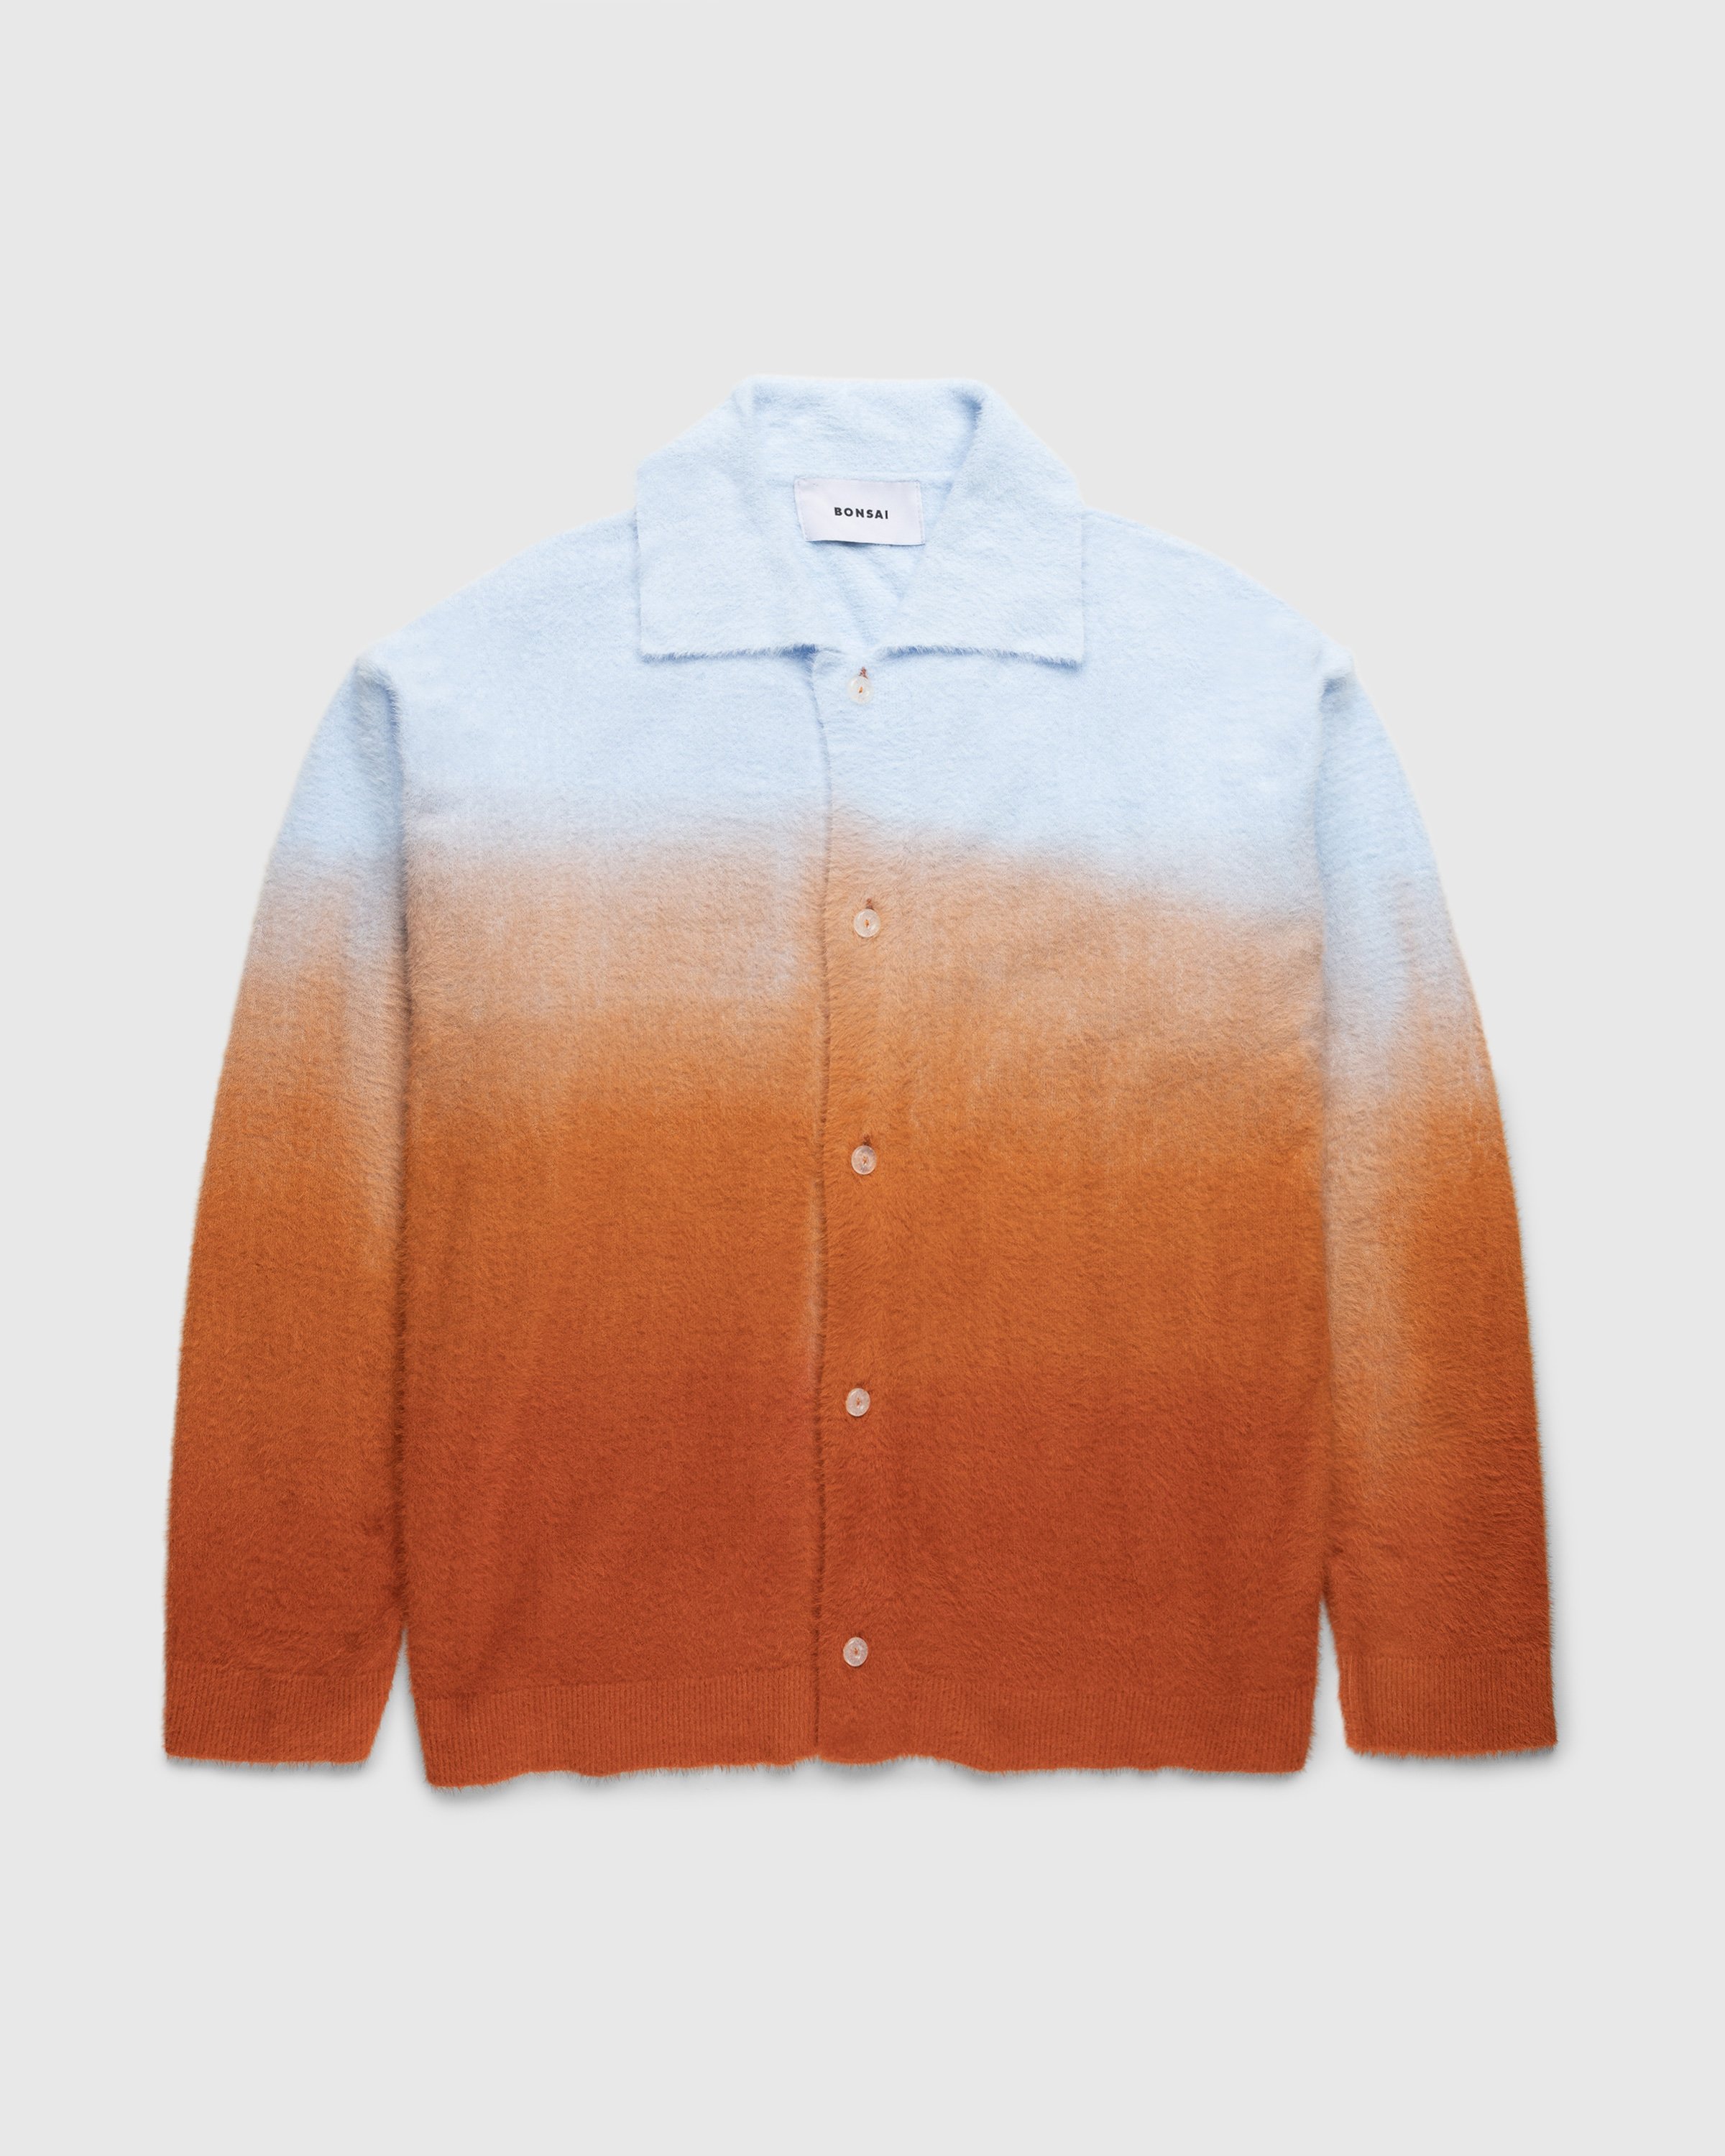 Bonsai - KNIT REGULAR FIT SHIRT Orange - Clothing - Orange - Image 1